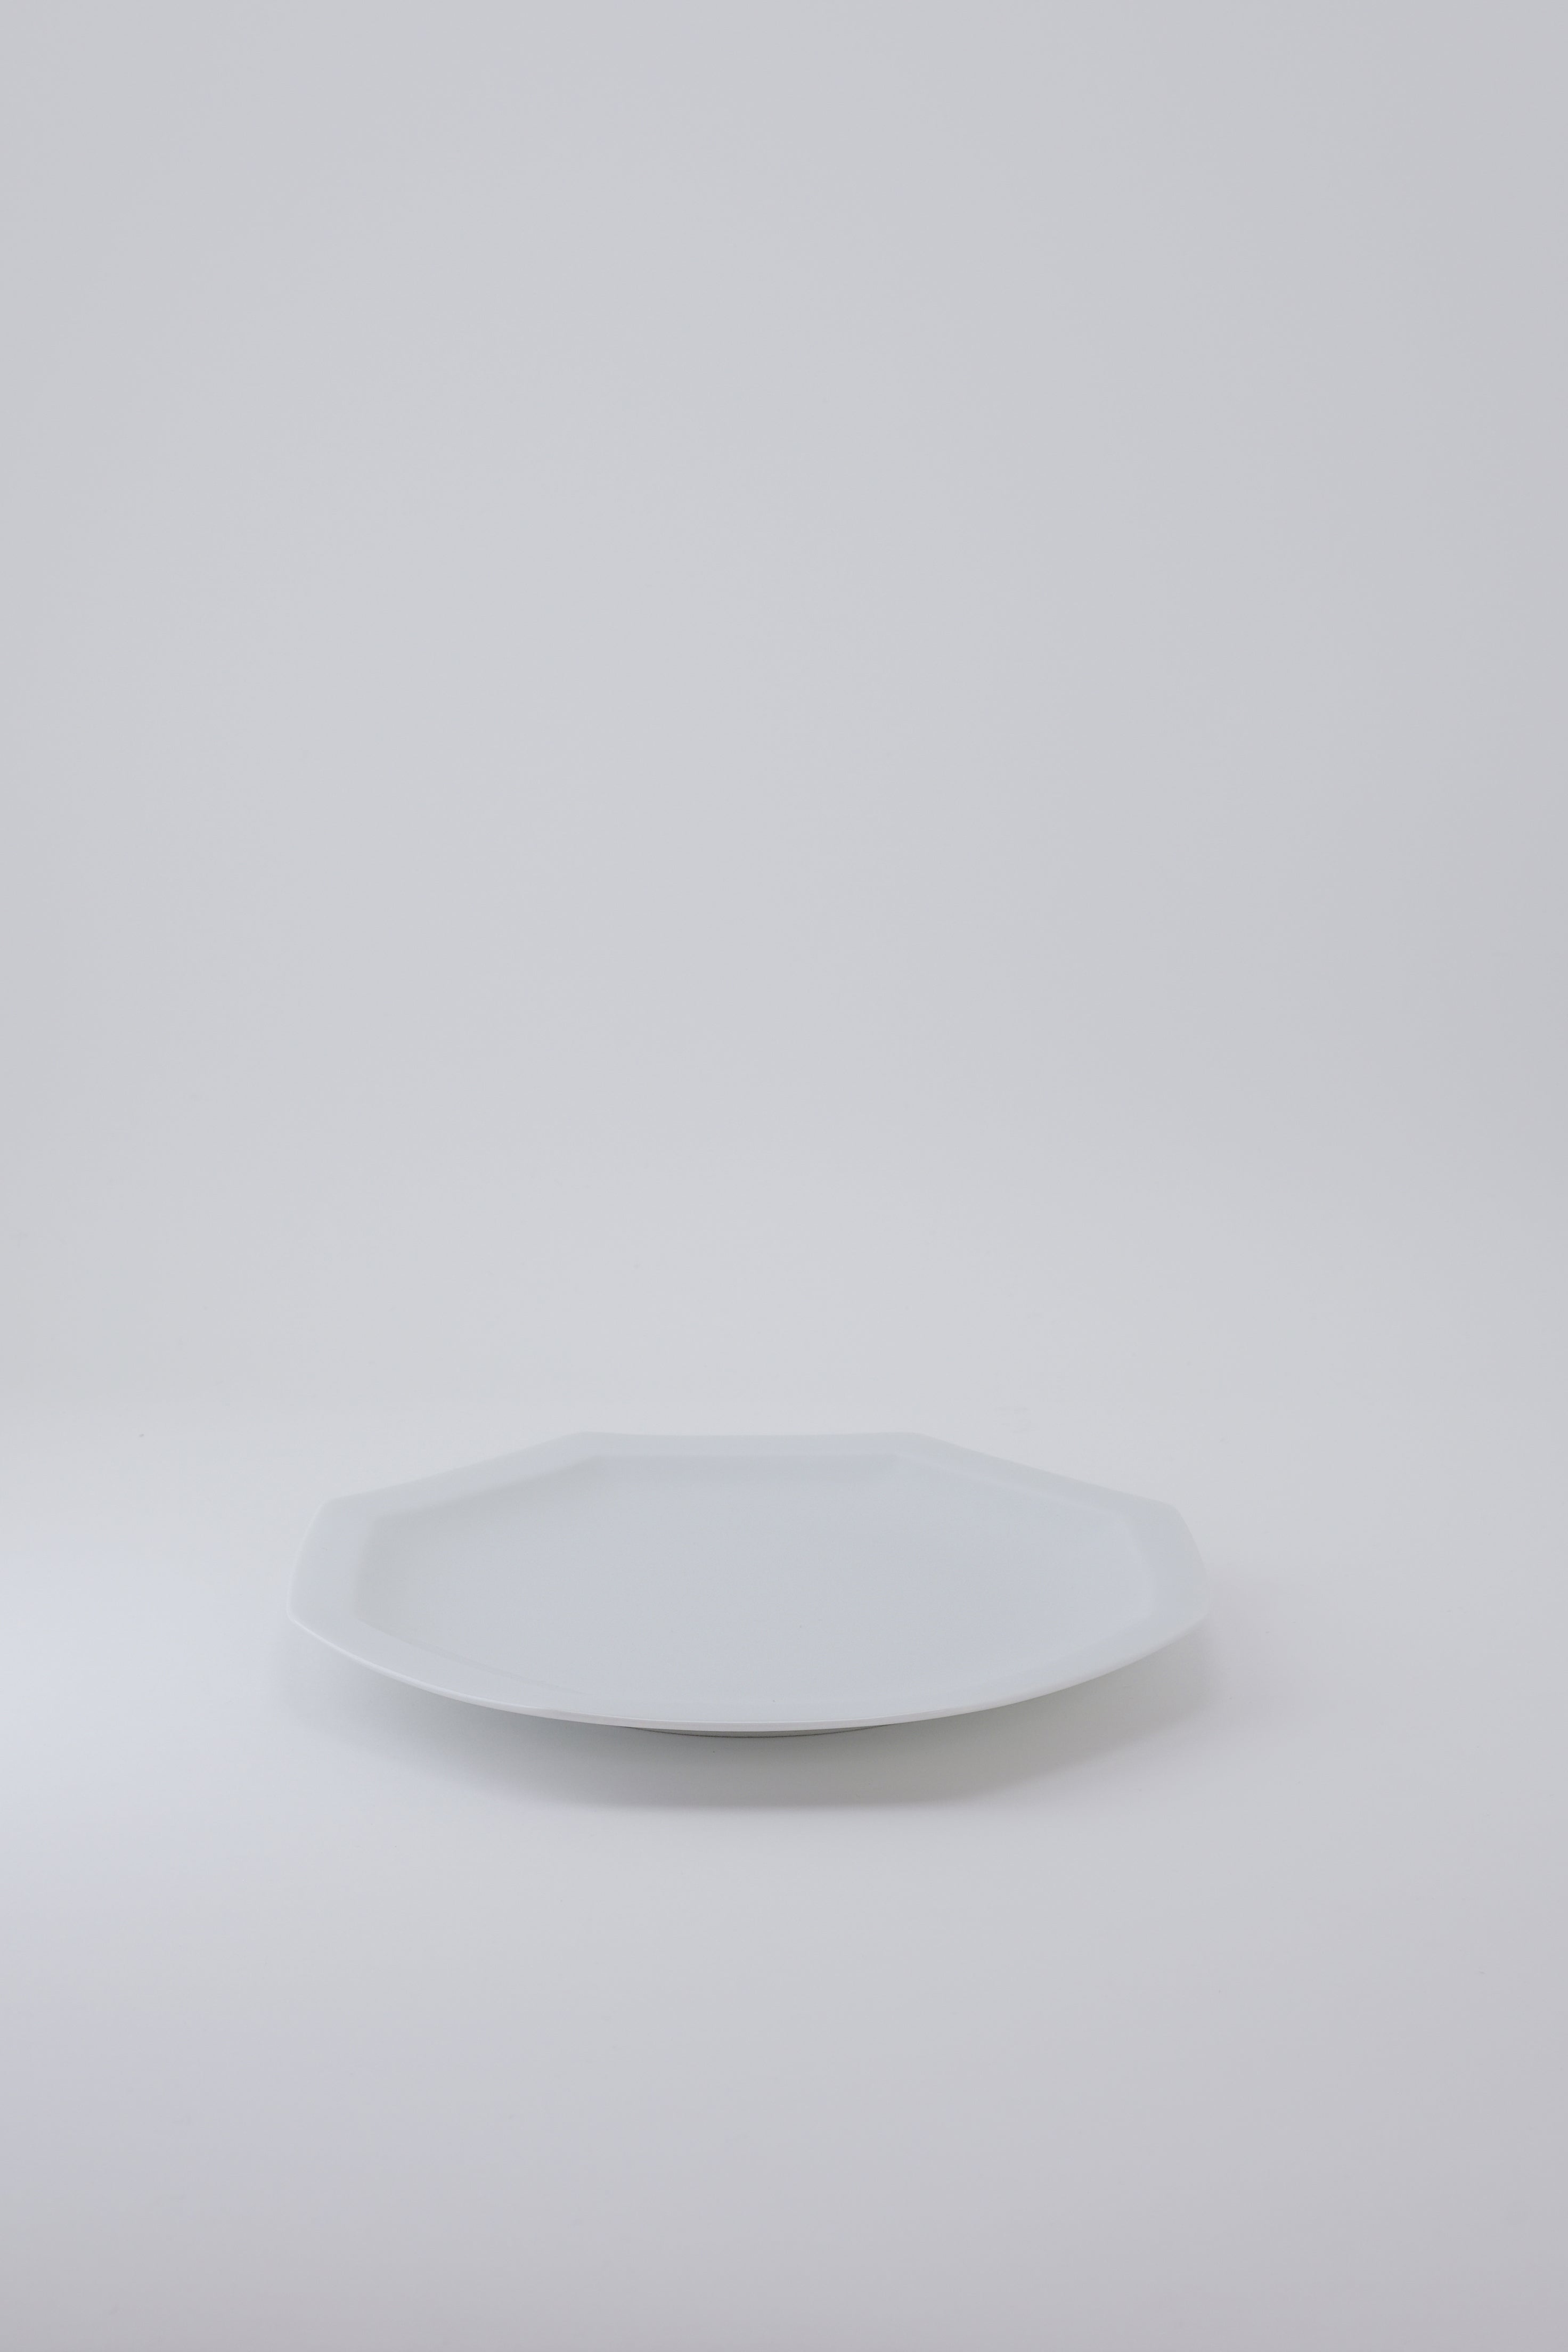 Octangle lunch plate white-Ogre-[interior]-[design]-KIOSK48TH